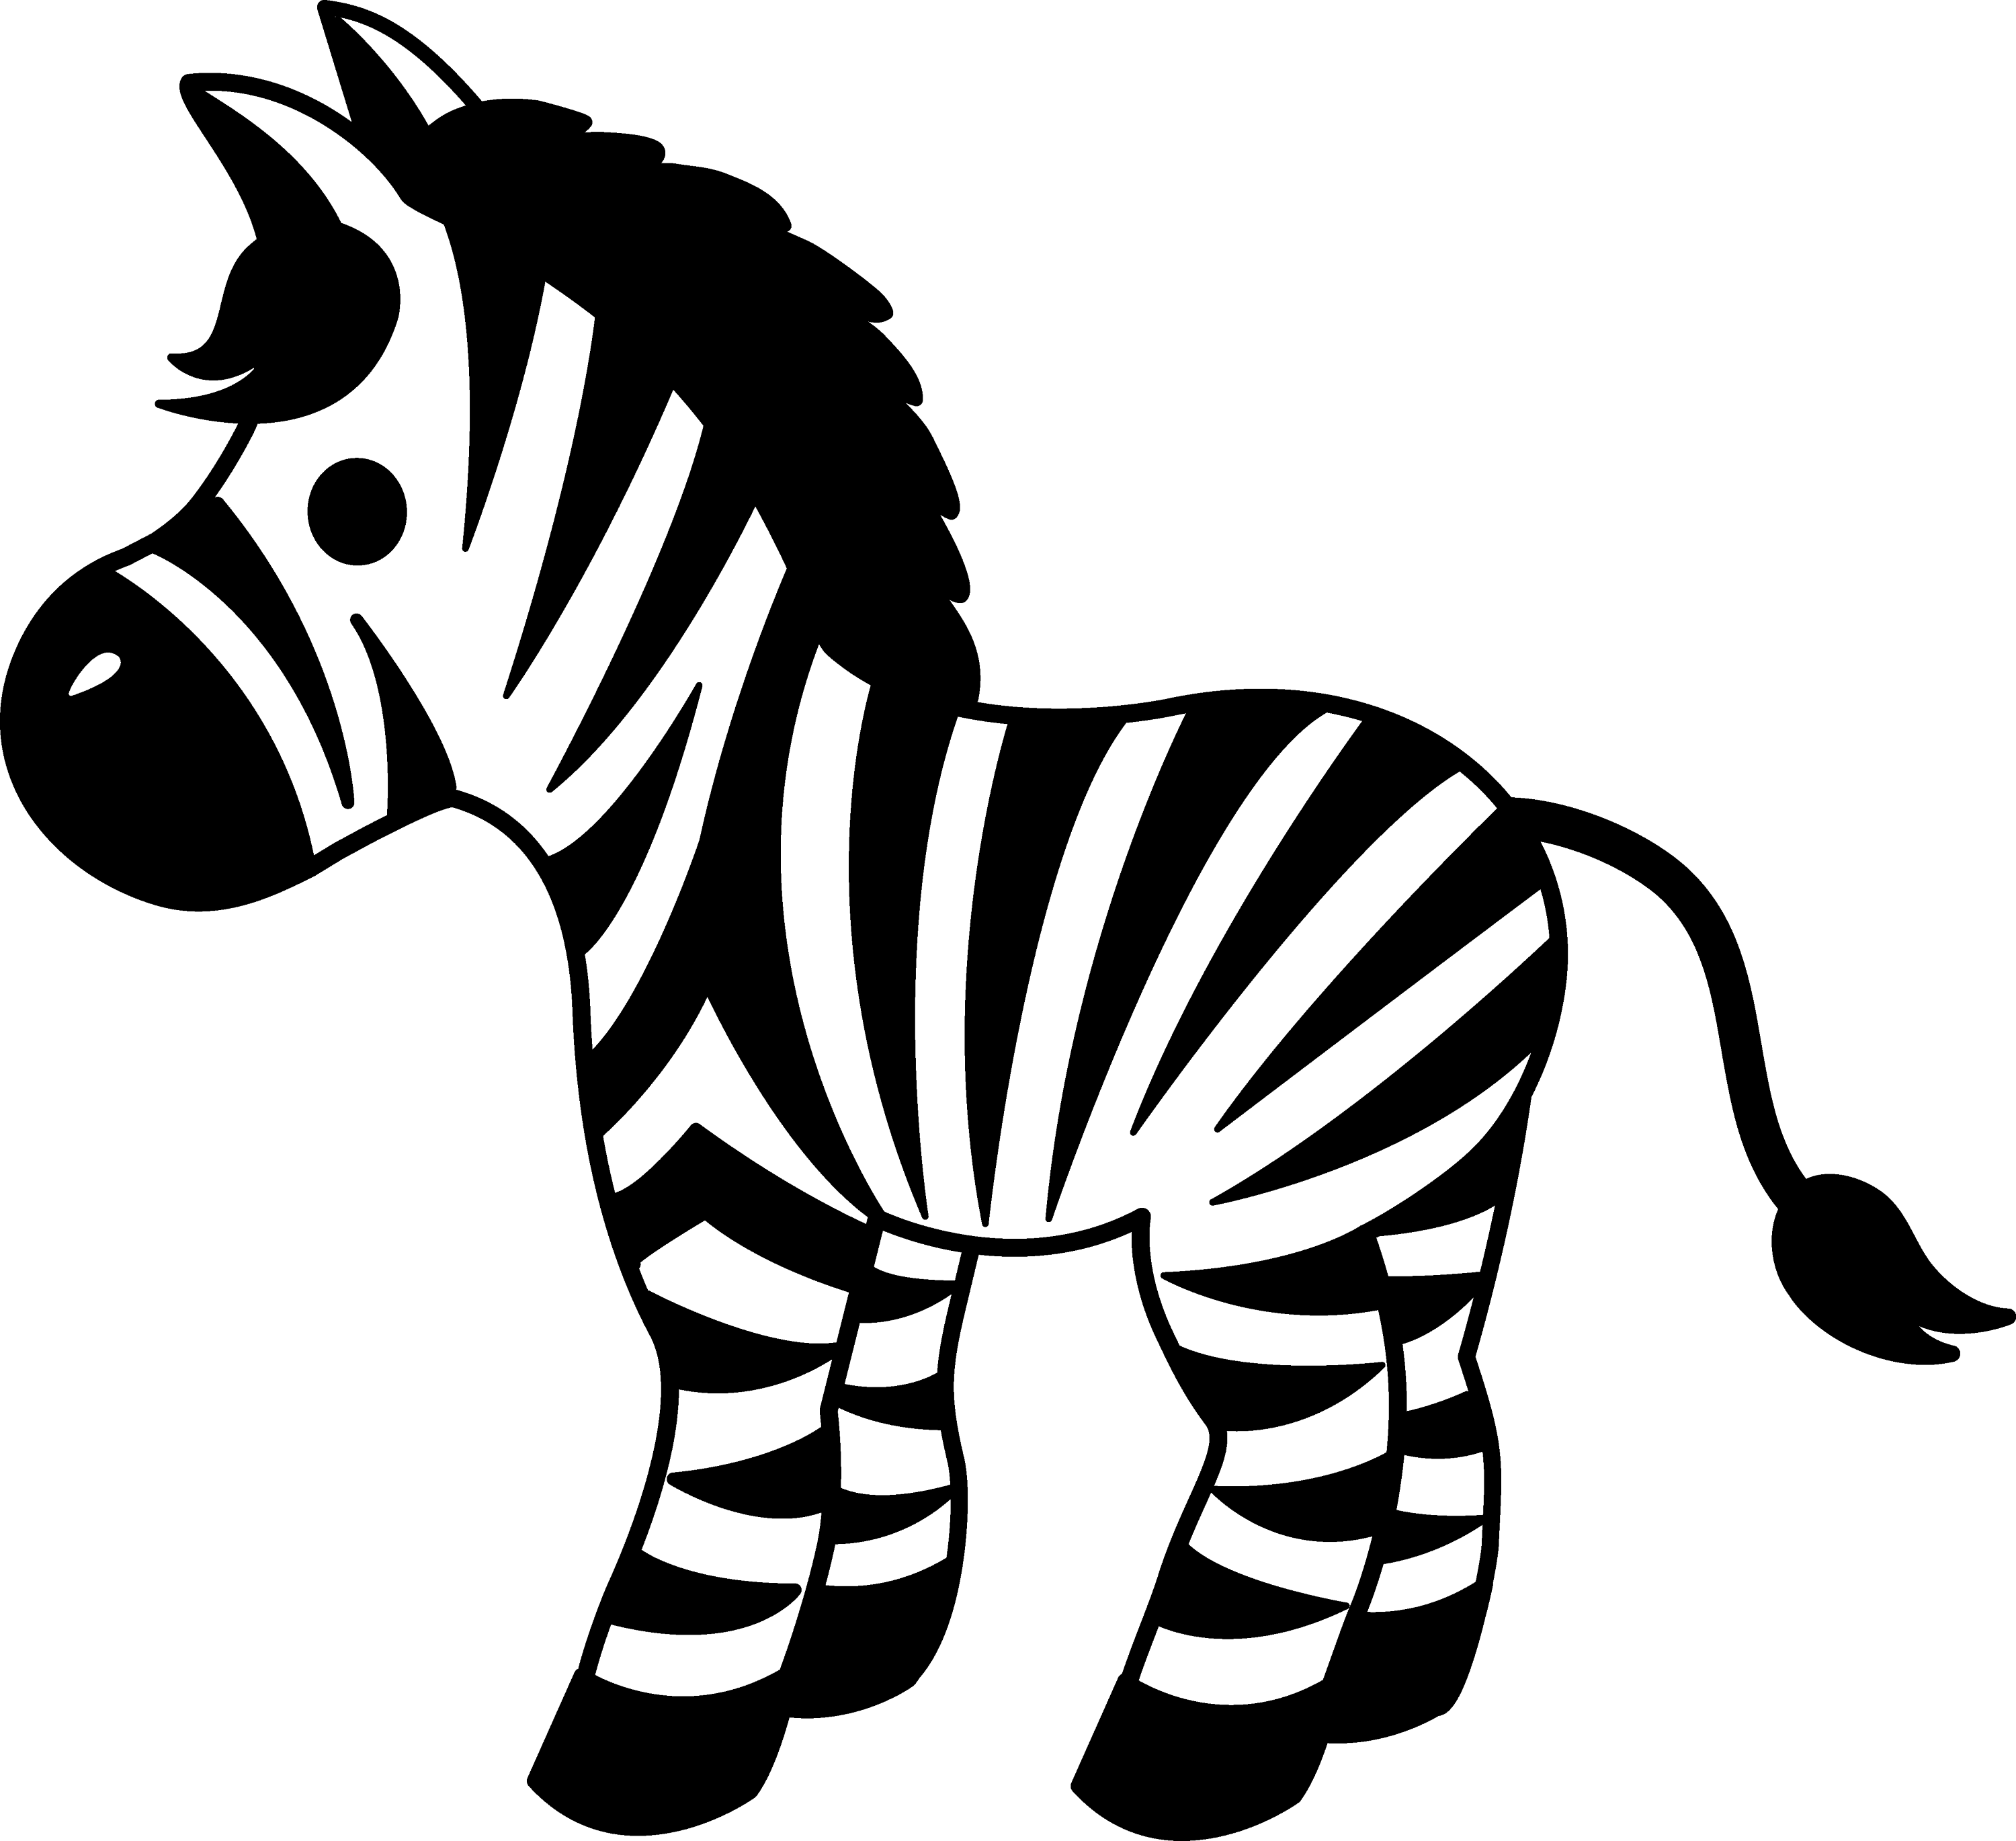 zebra silhouette clip art - photo #41